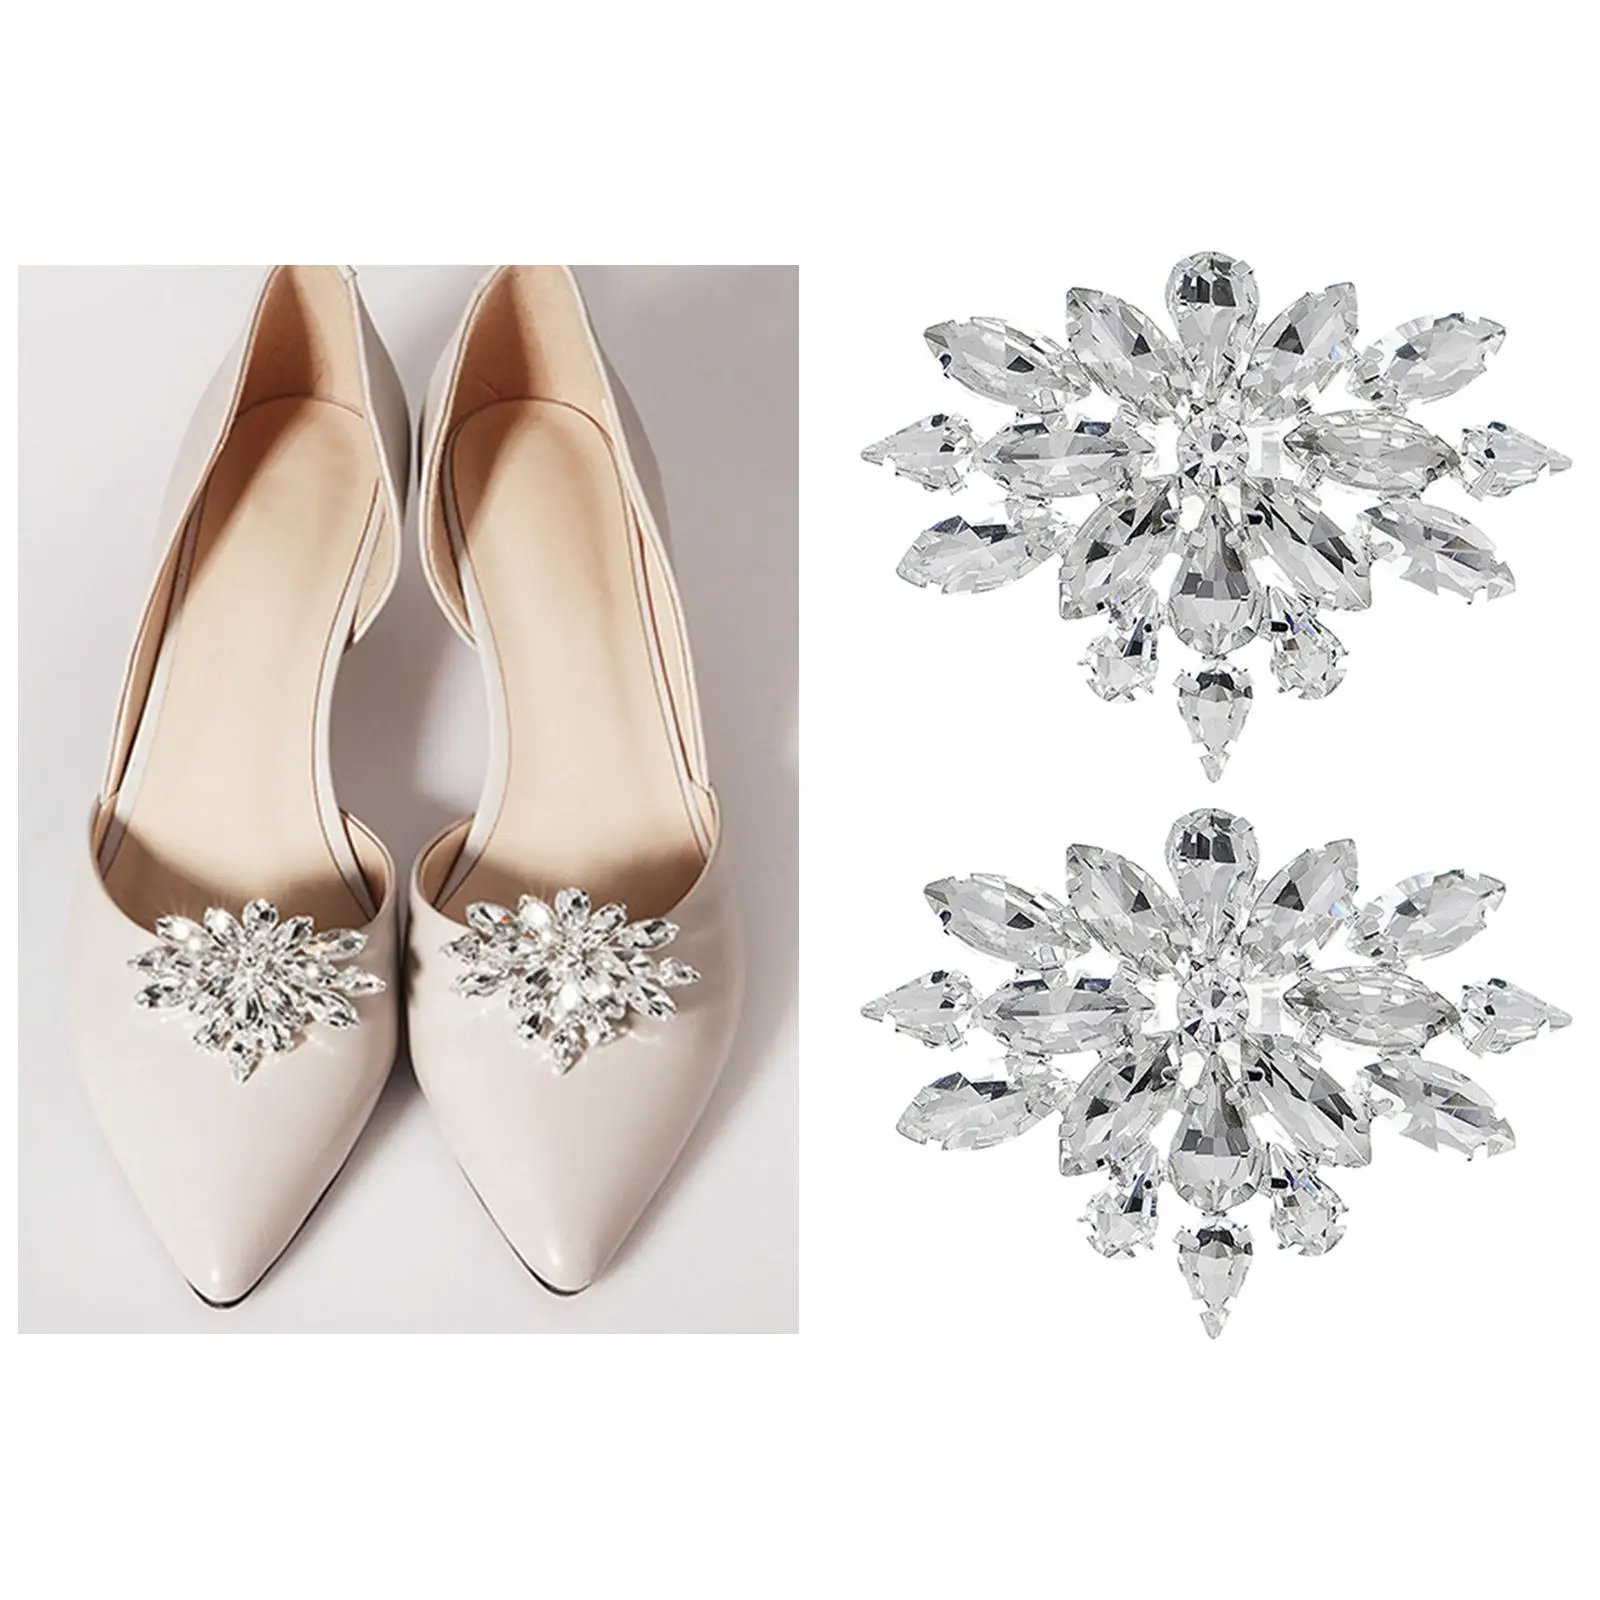 2Pcs Wedding Shoe Clips Elegant DIY Decorative Shoe Charms for Bride Dress Hat Accessories